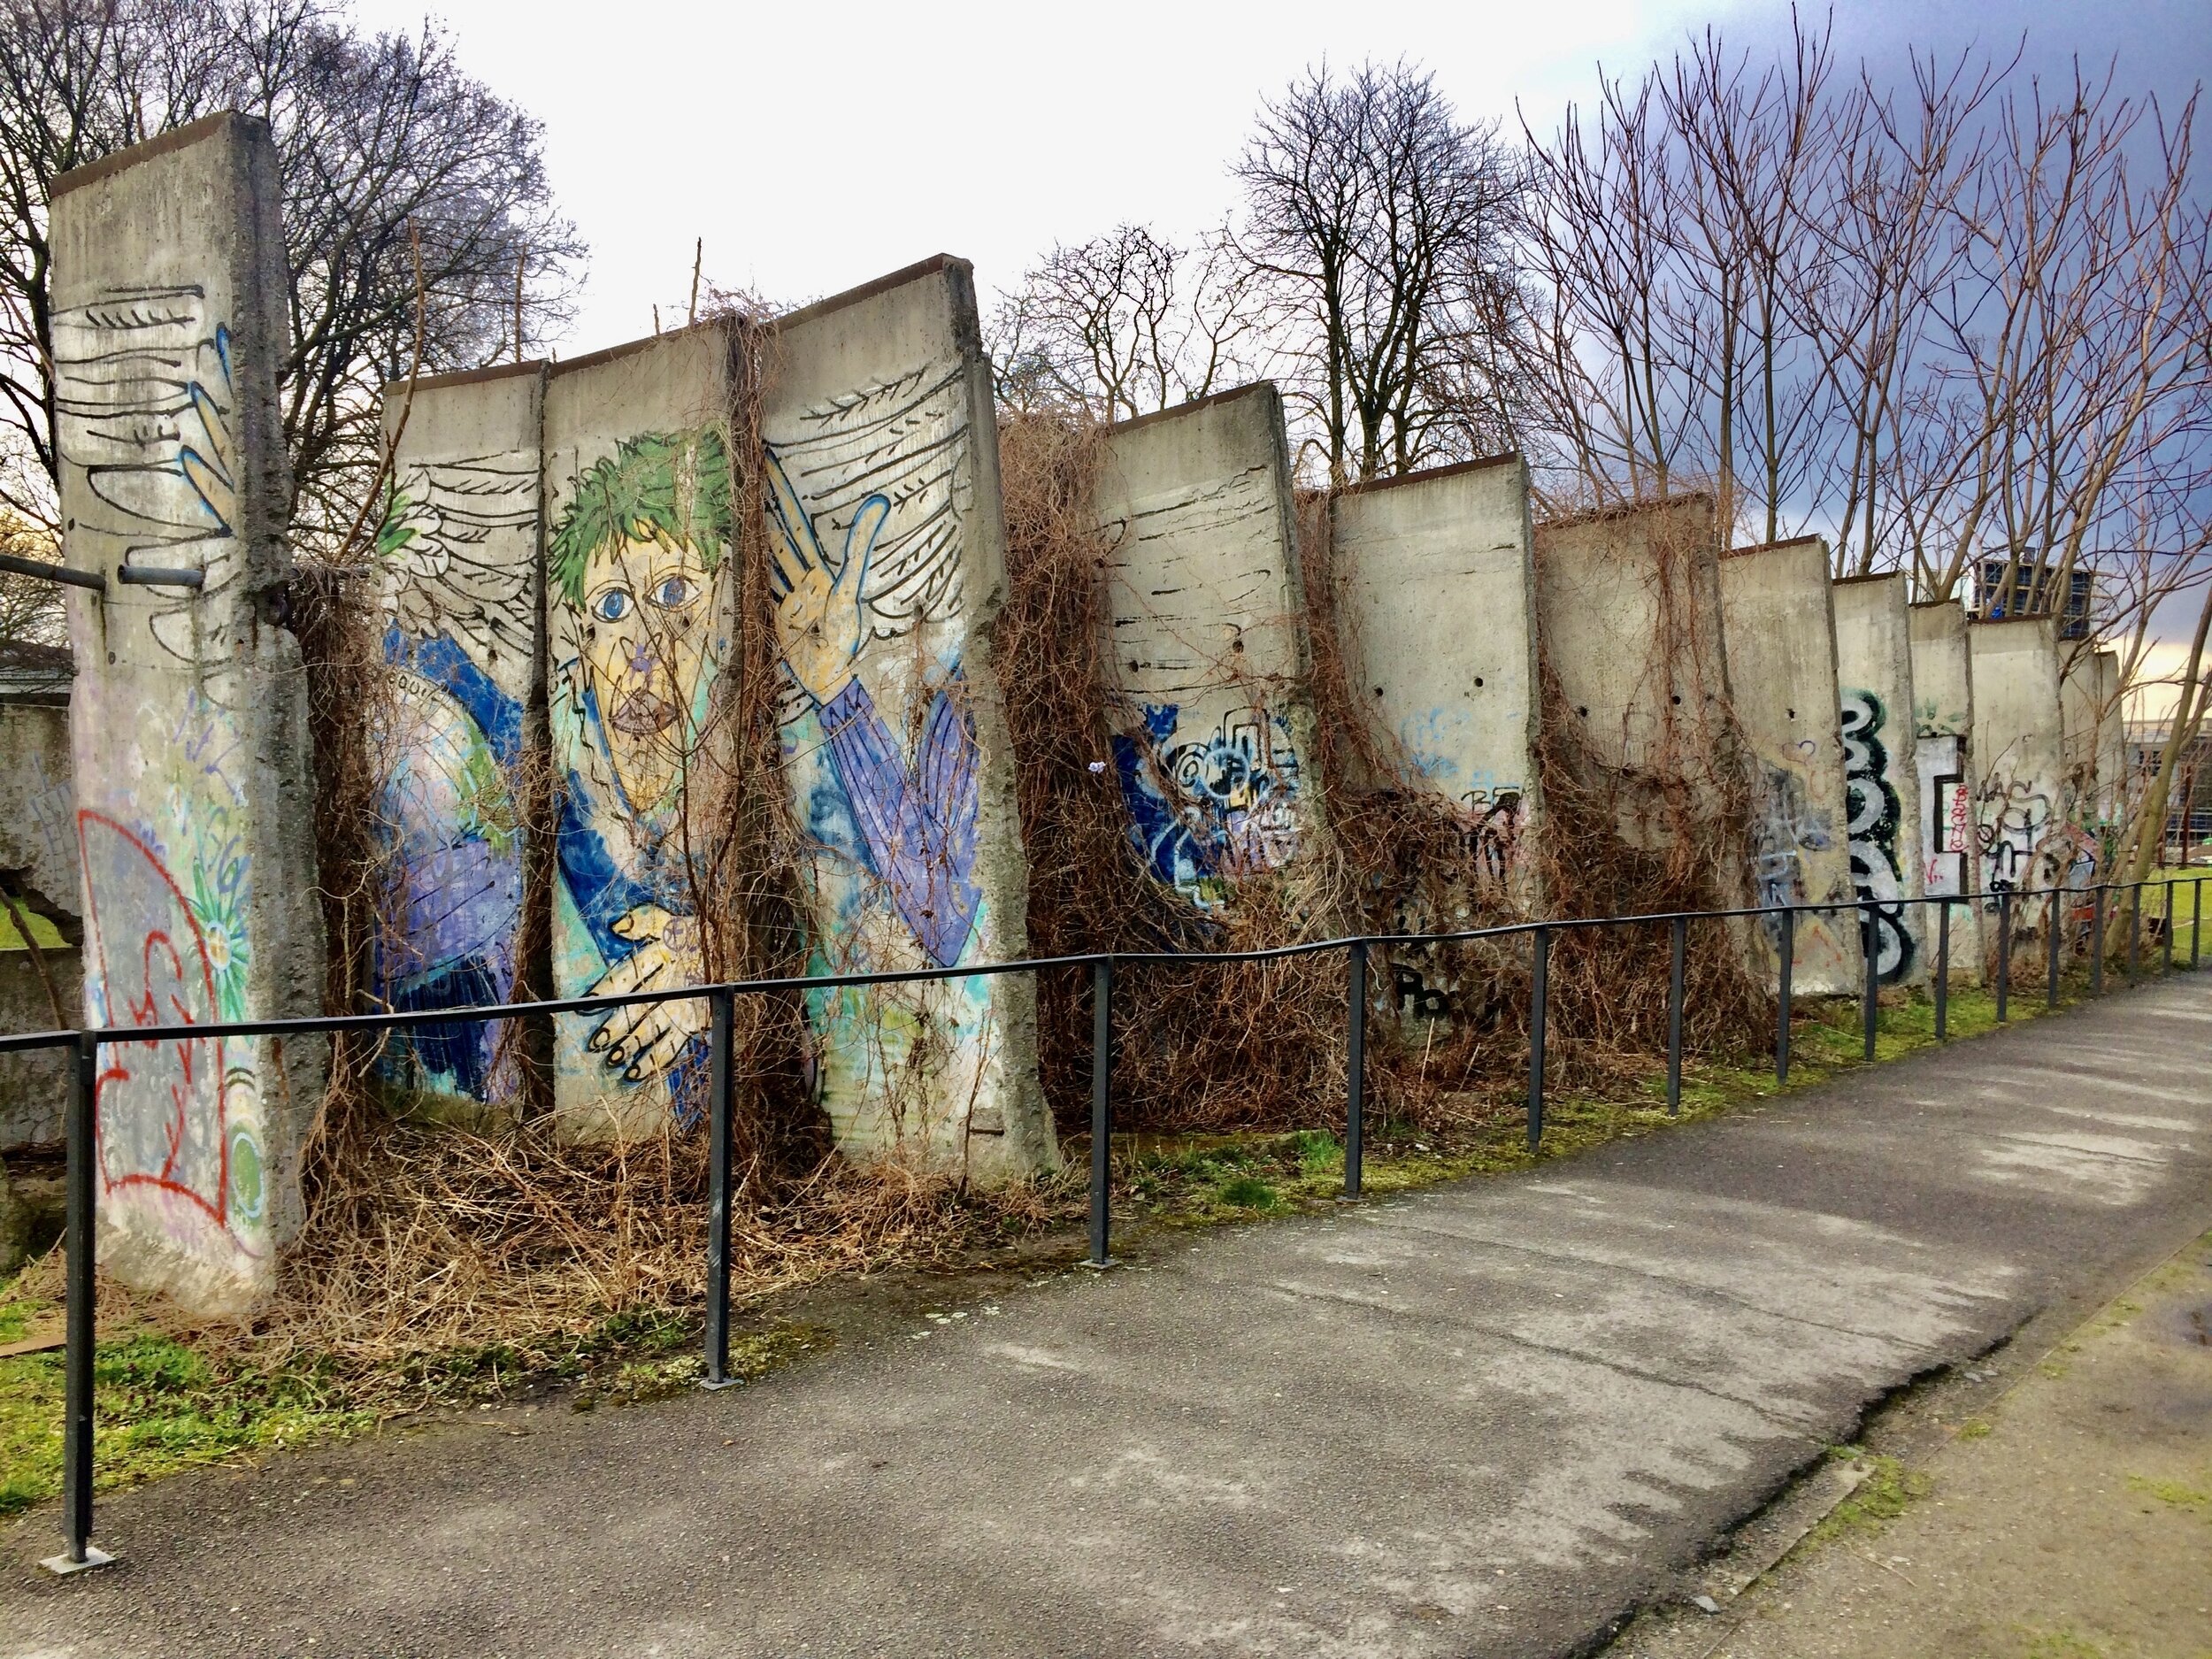 Germany's Berlin Wall